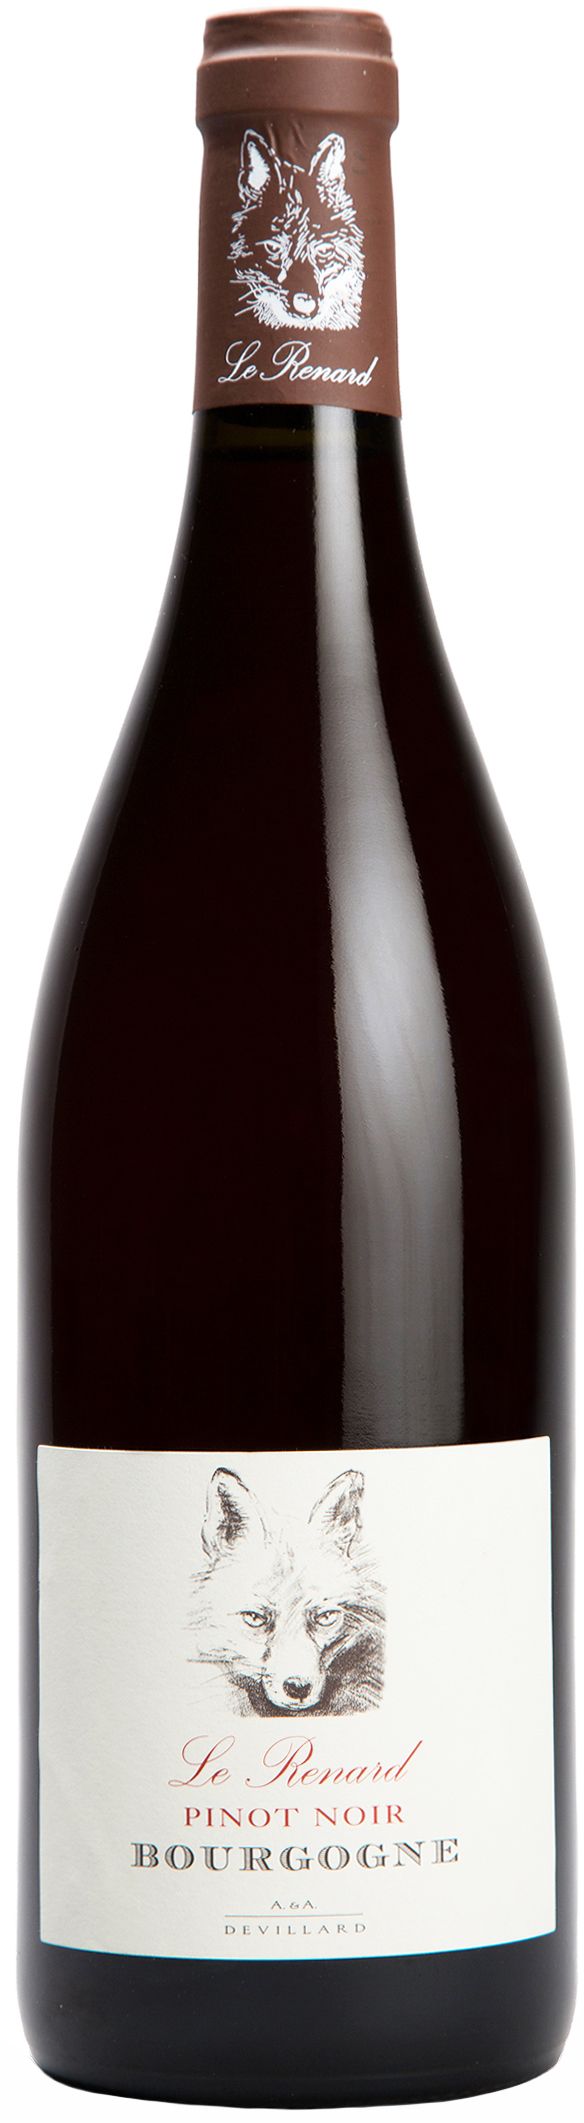 Chateau De Chamirey, Le Renard Pinot Noir Bourgogne, 2016